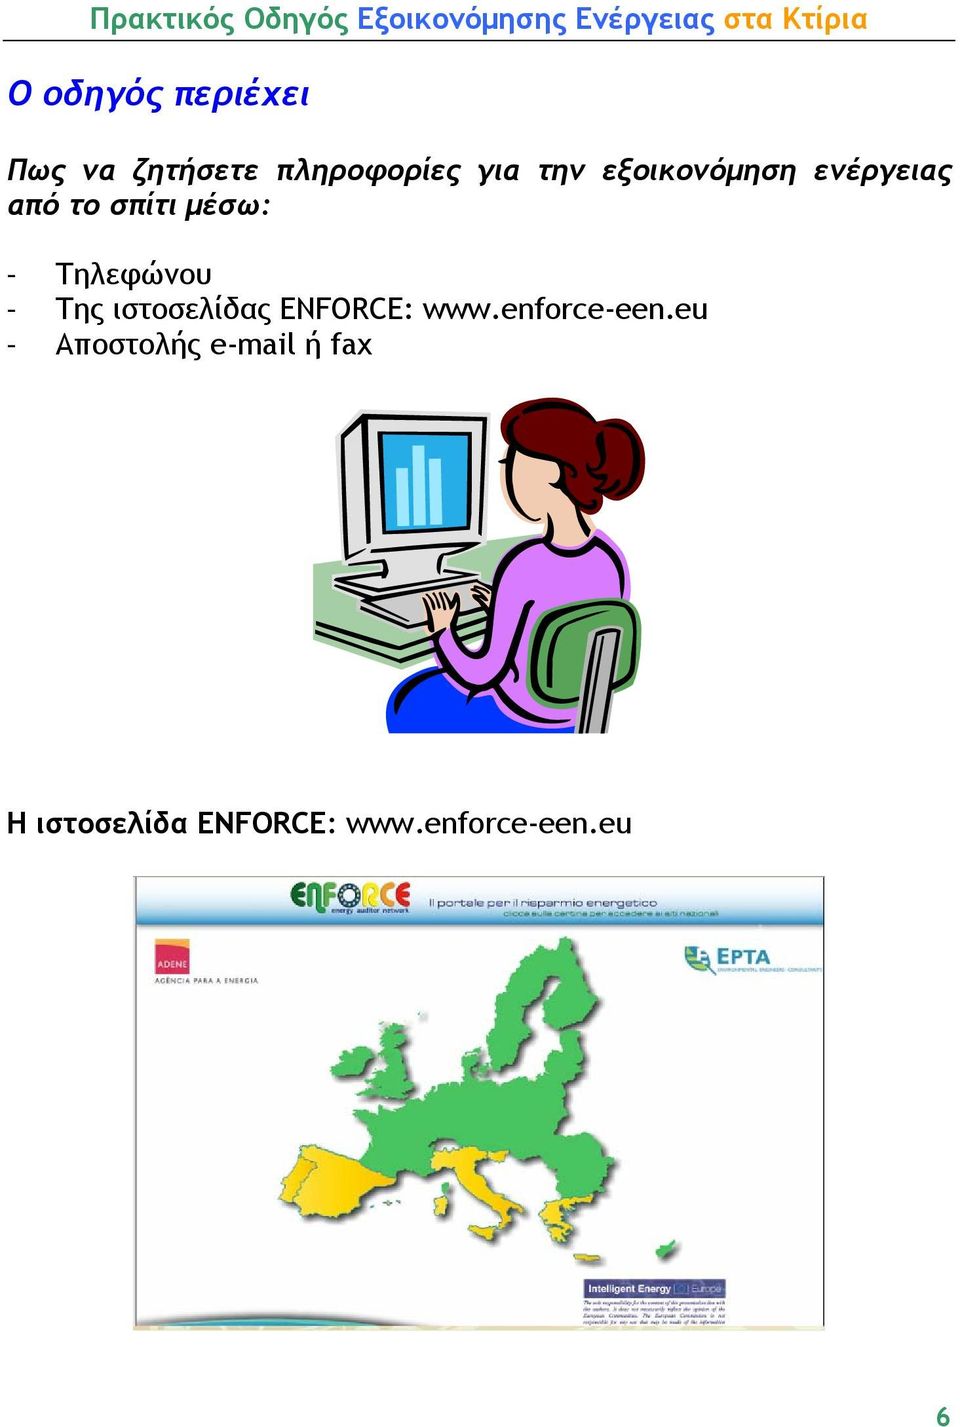 Της ιστοσελίδας ENFORCE: www.enforce-een.